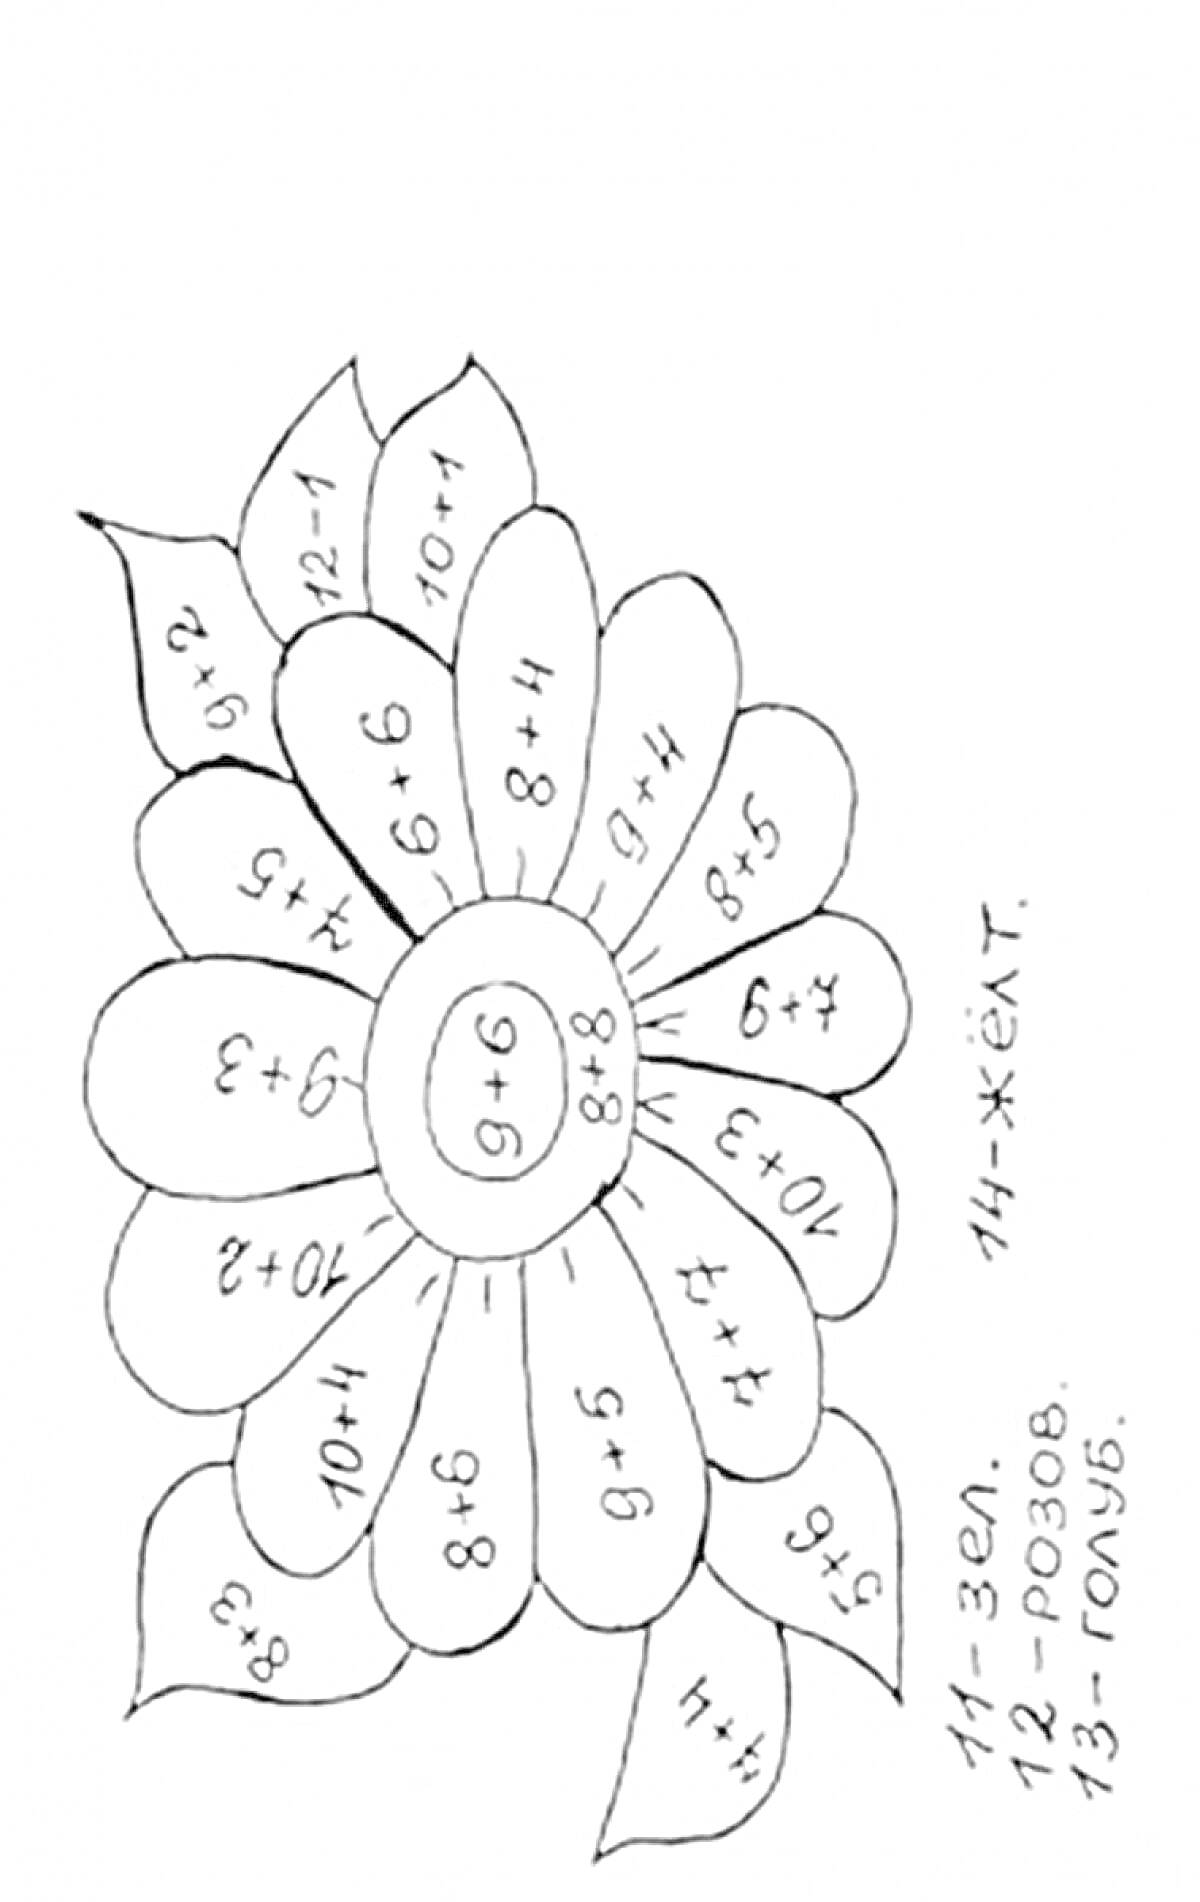 Цветик семицветик с математическими примерами и подписями цветов